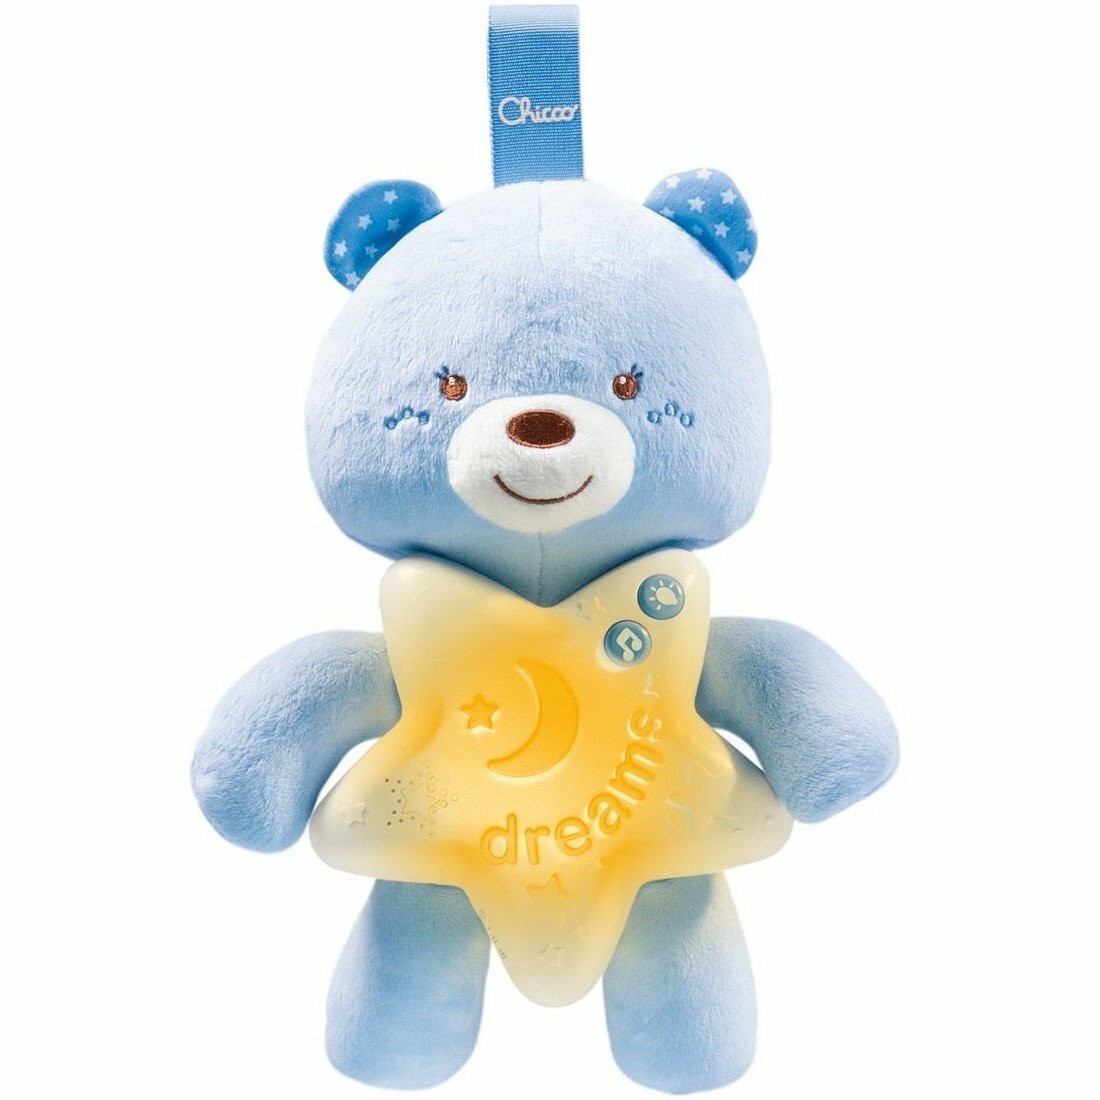 Chicco Goodnight bear svietiaci medvedík, nočné svetielko, modré